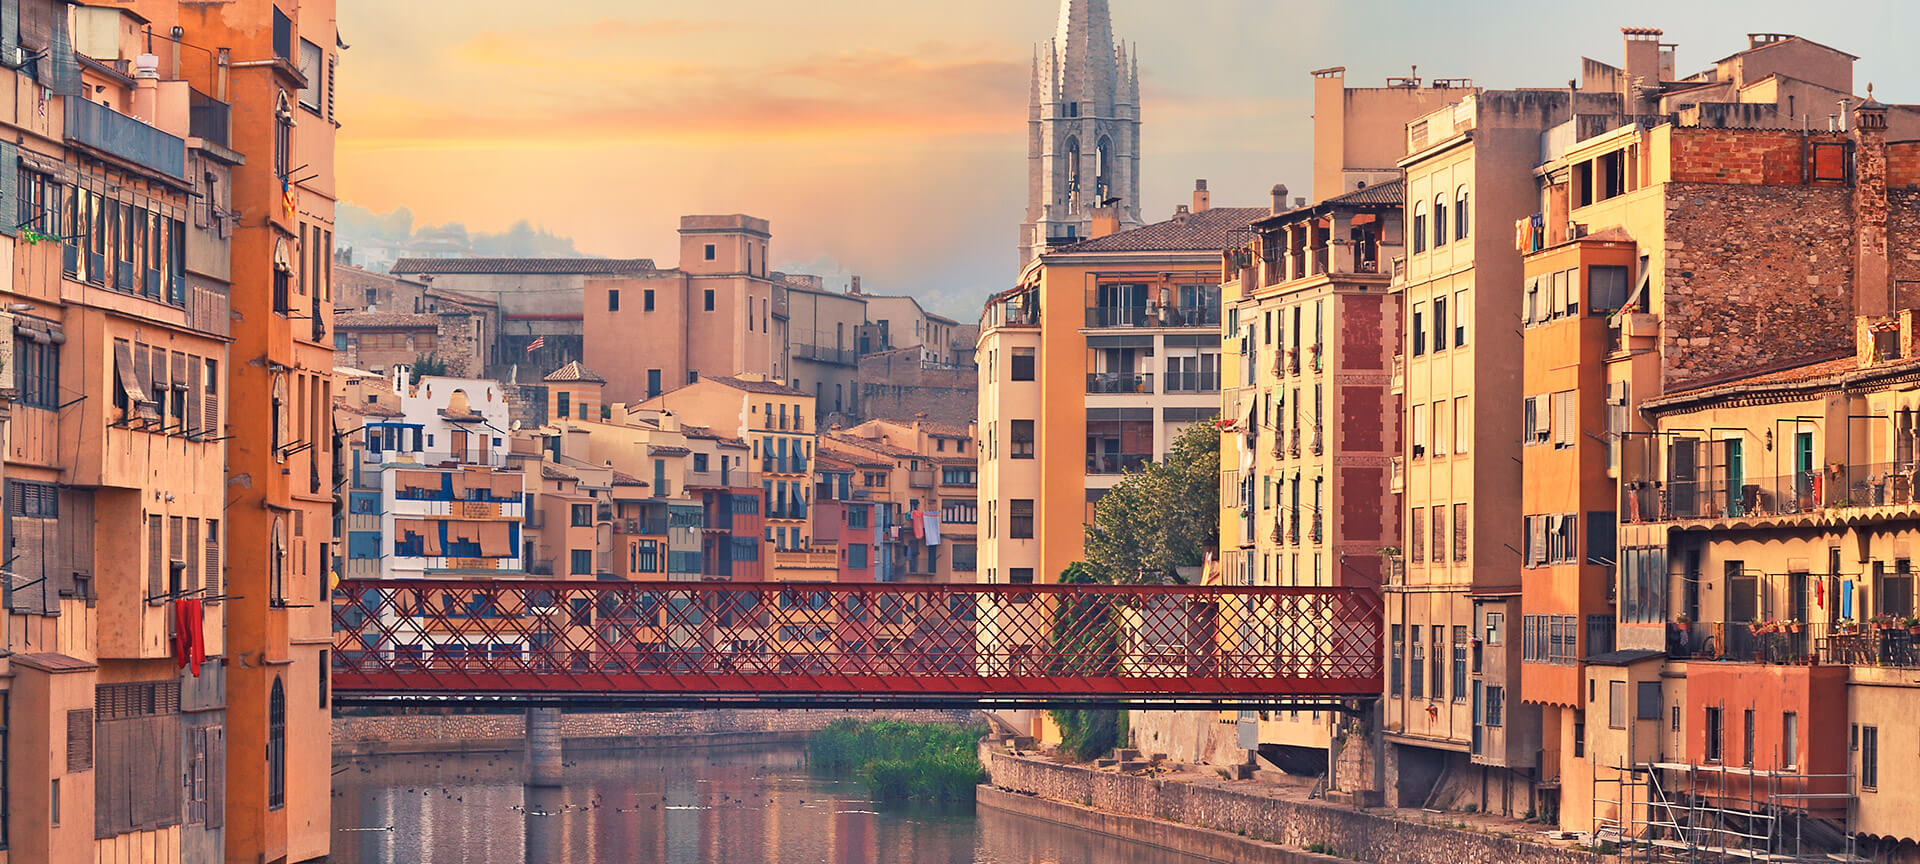 Turismo a Girona. Cosa visitare. Informazioni turistiche | spain.info in italiano